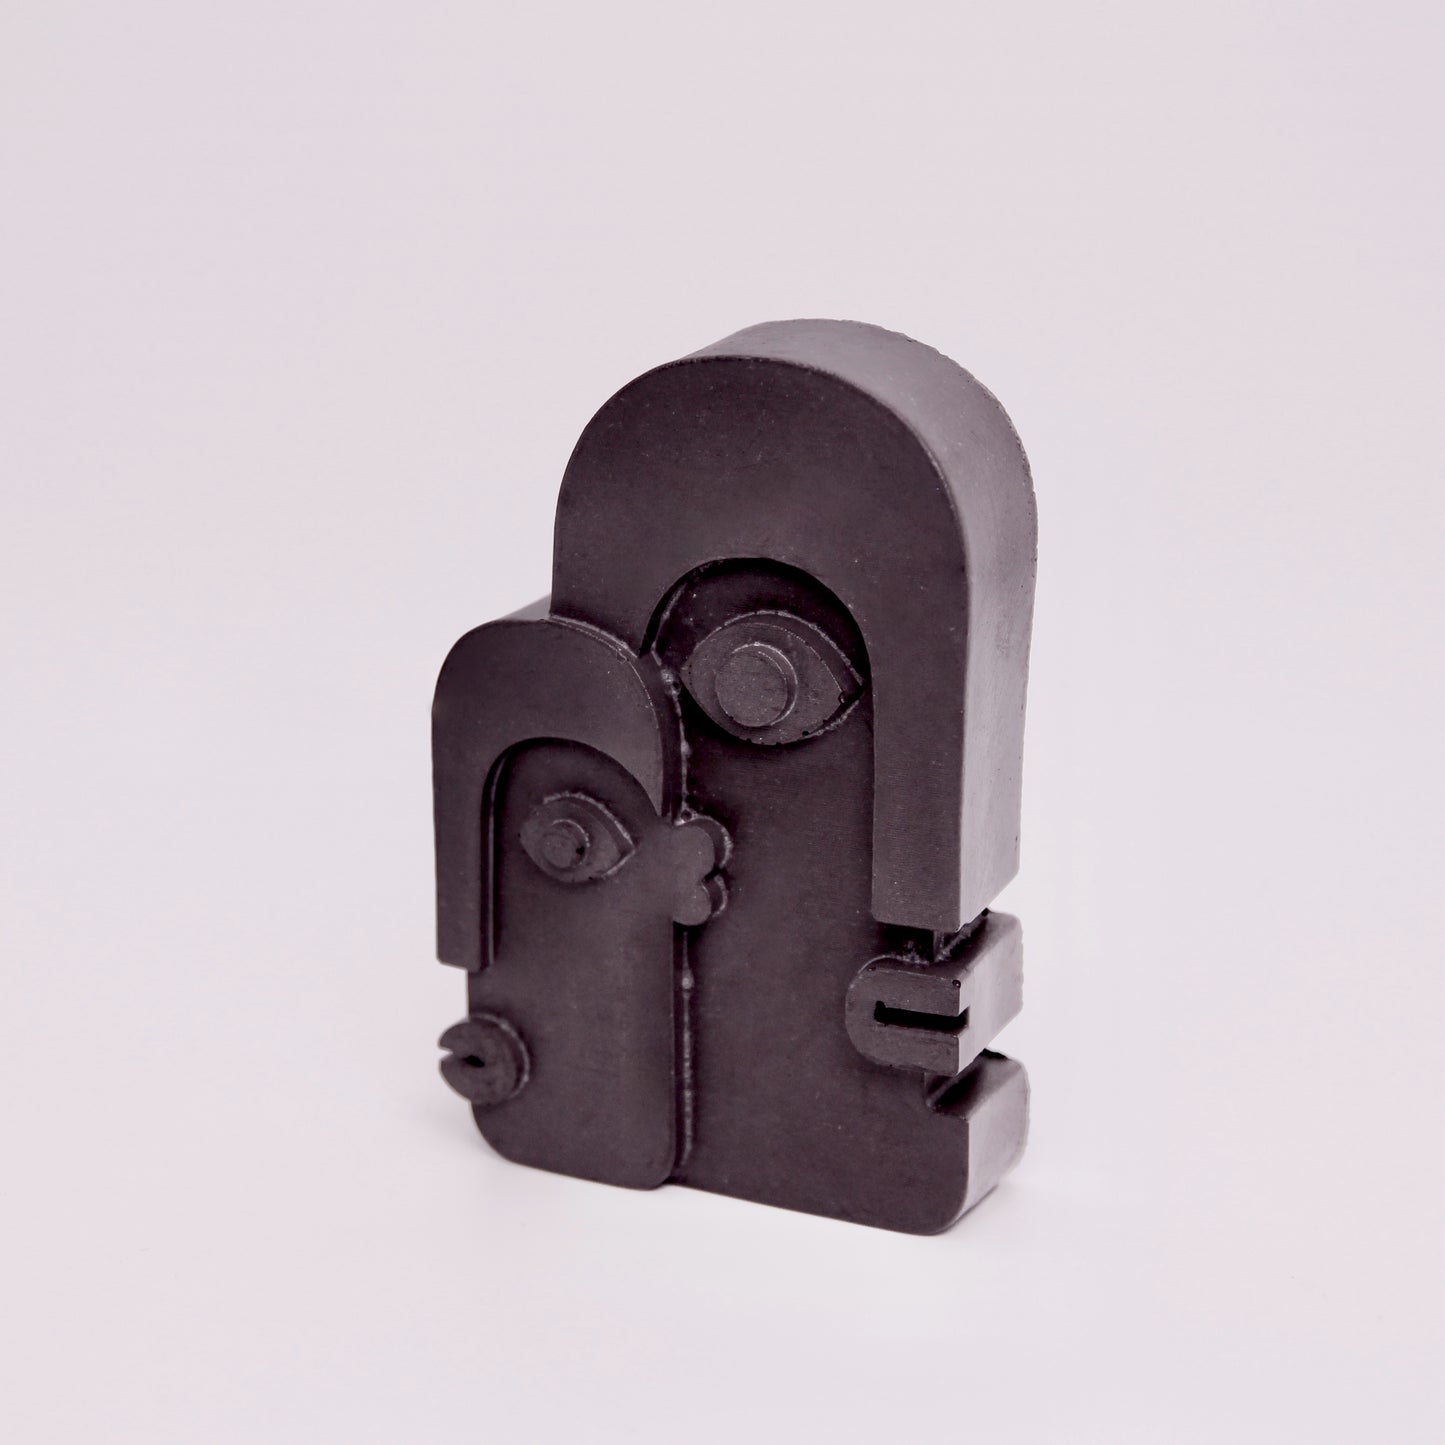 Concrete Two Faces Mini Sculpture - Black